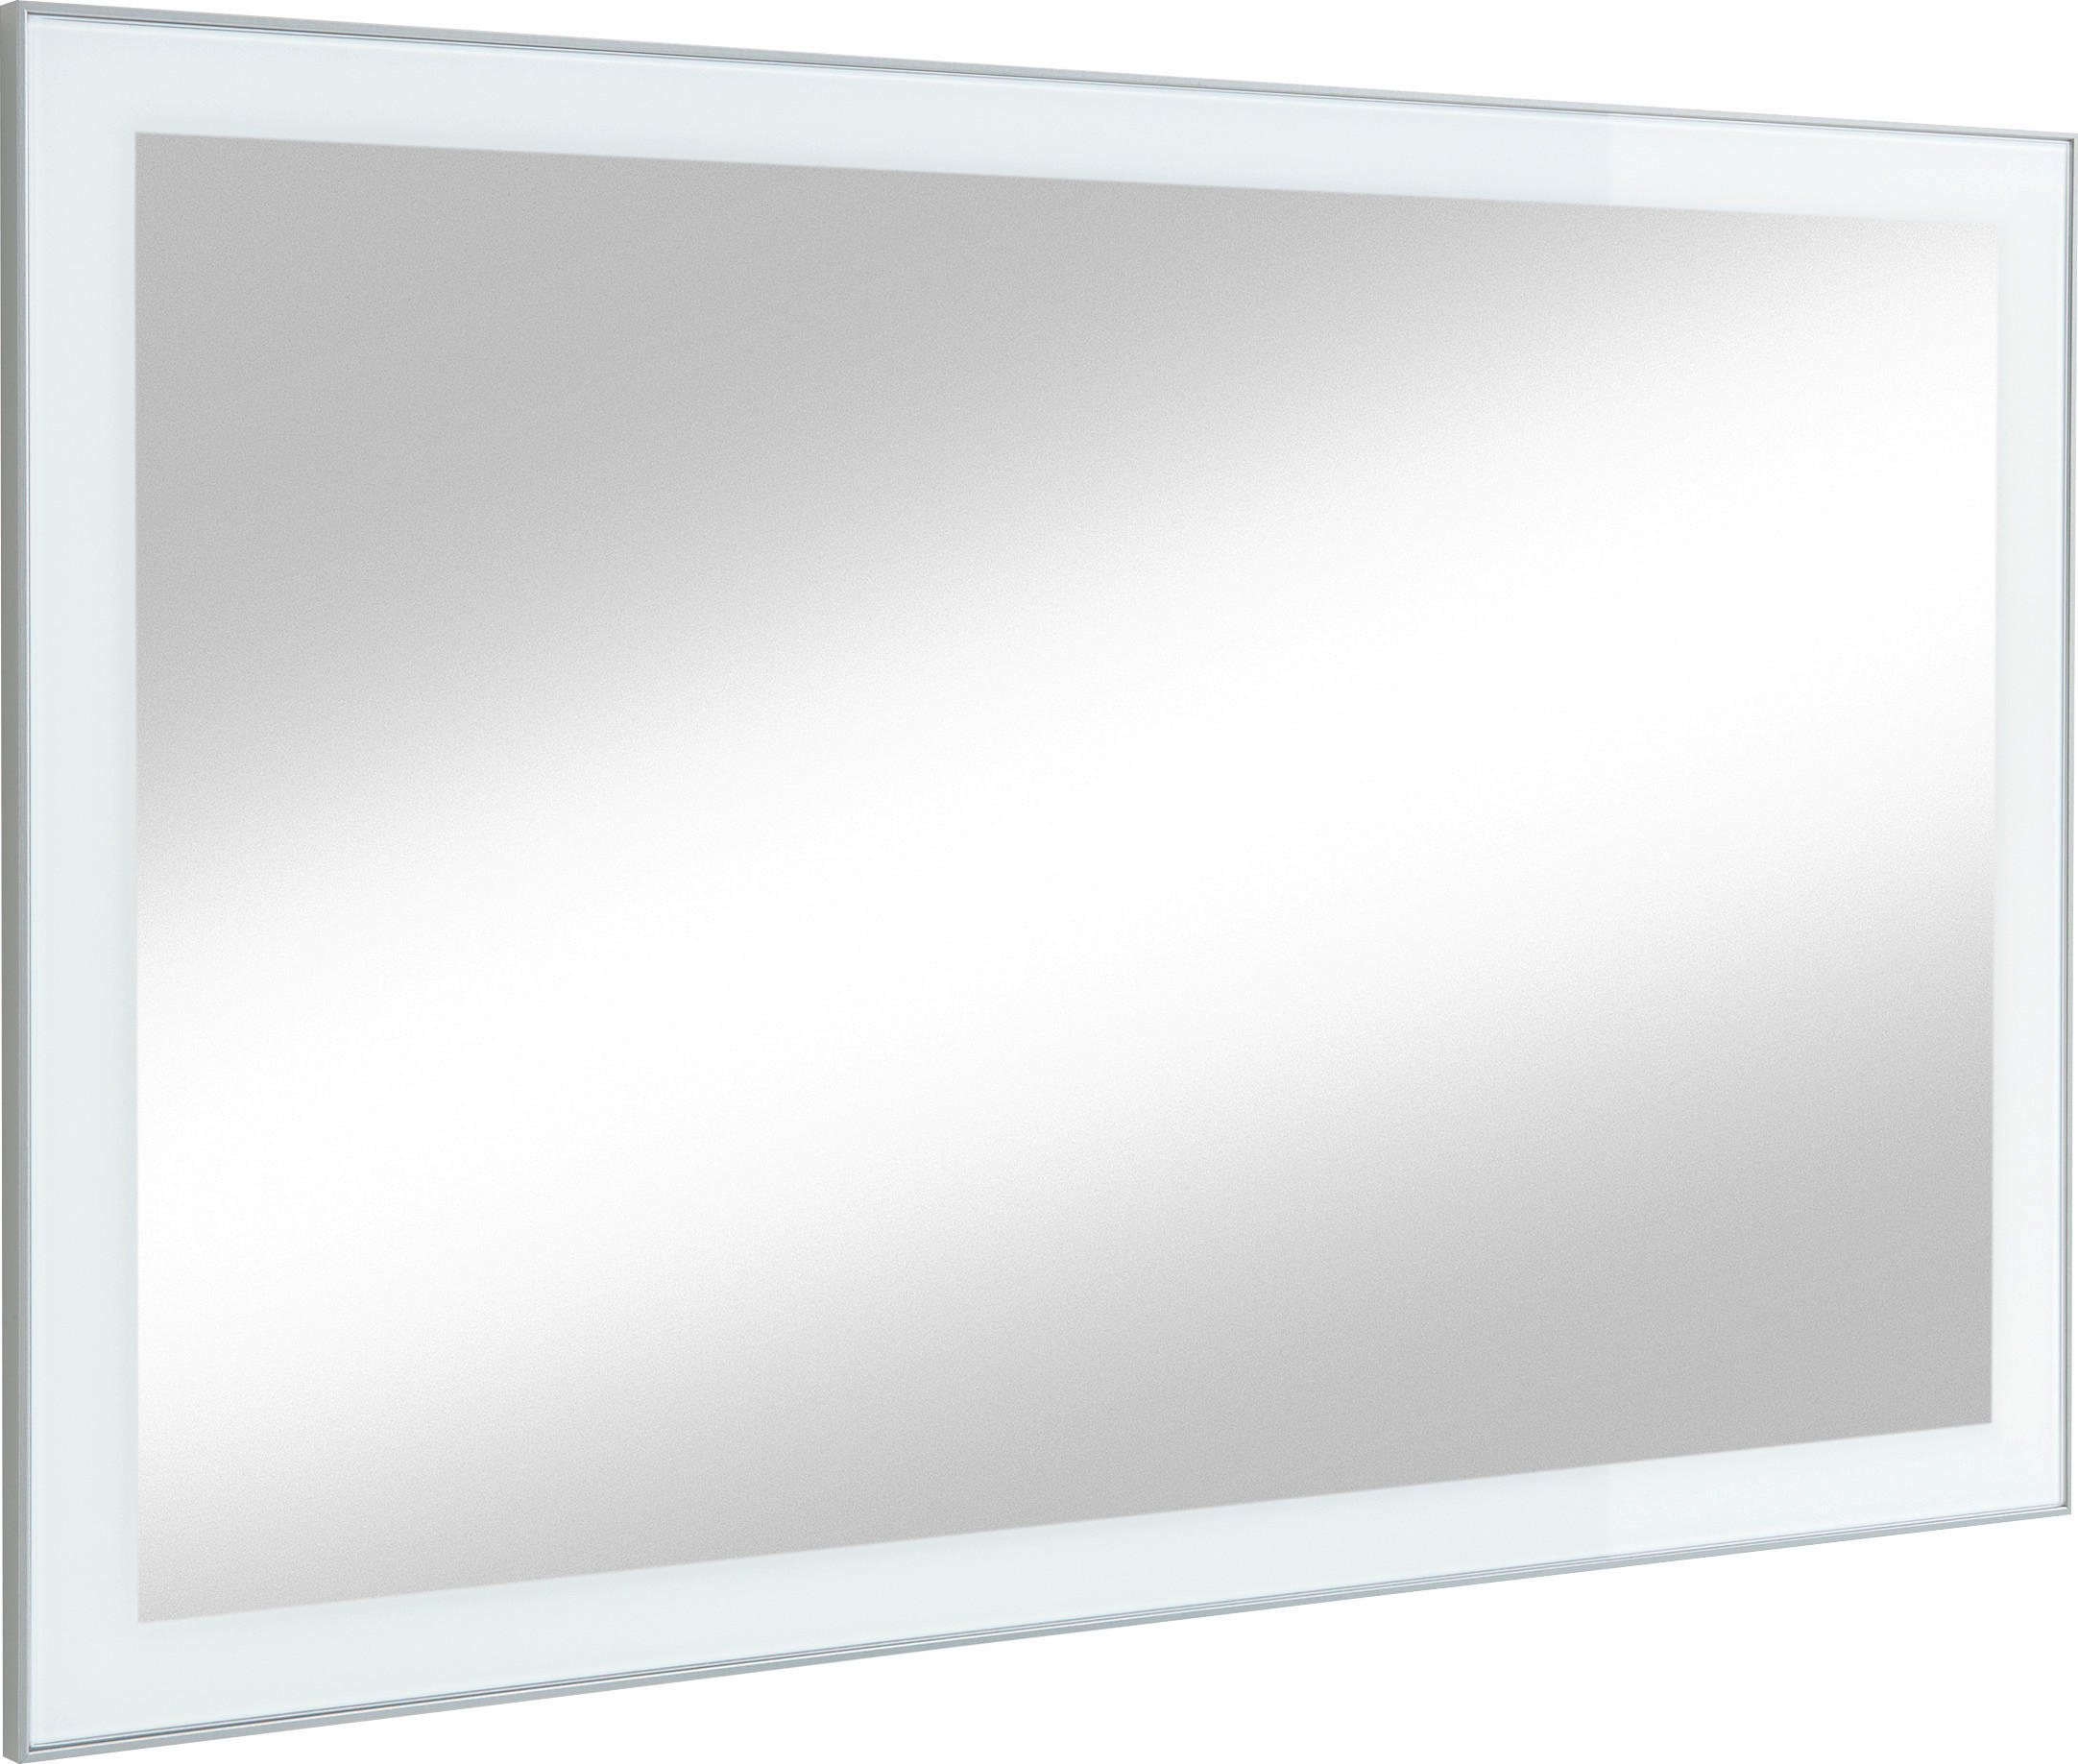 WANDSPIEGEL 120/77/2 cm  - Weiß, Design, Glas (120/77/2cm)